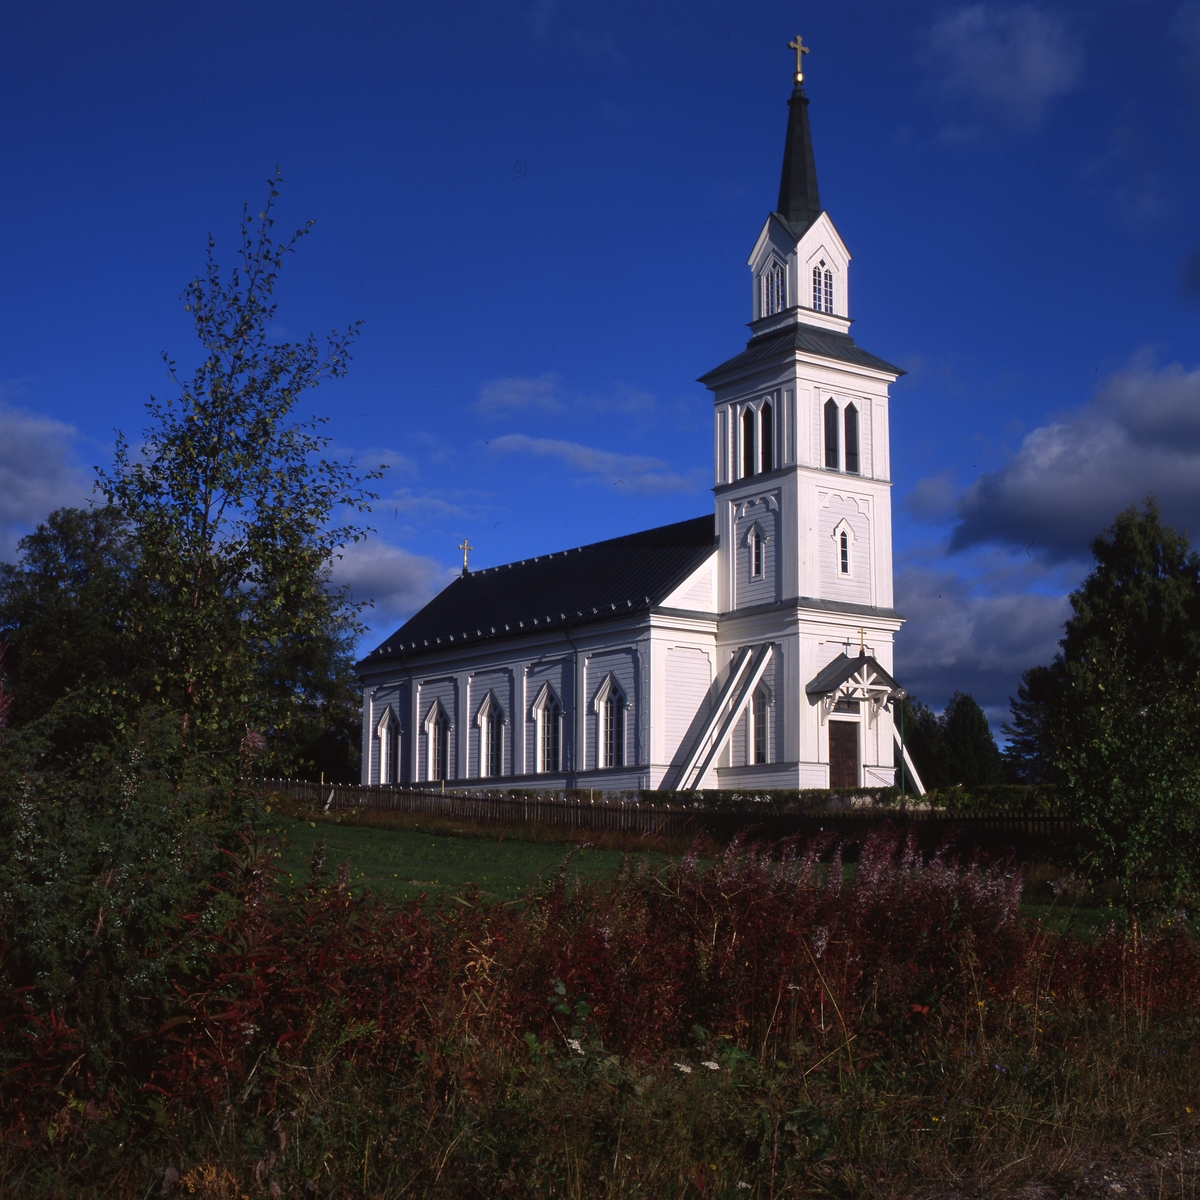 Hamra kyrka från 1872, 1996. Träkyrka som ligger på en höjd med utsikt över skogarna.